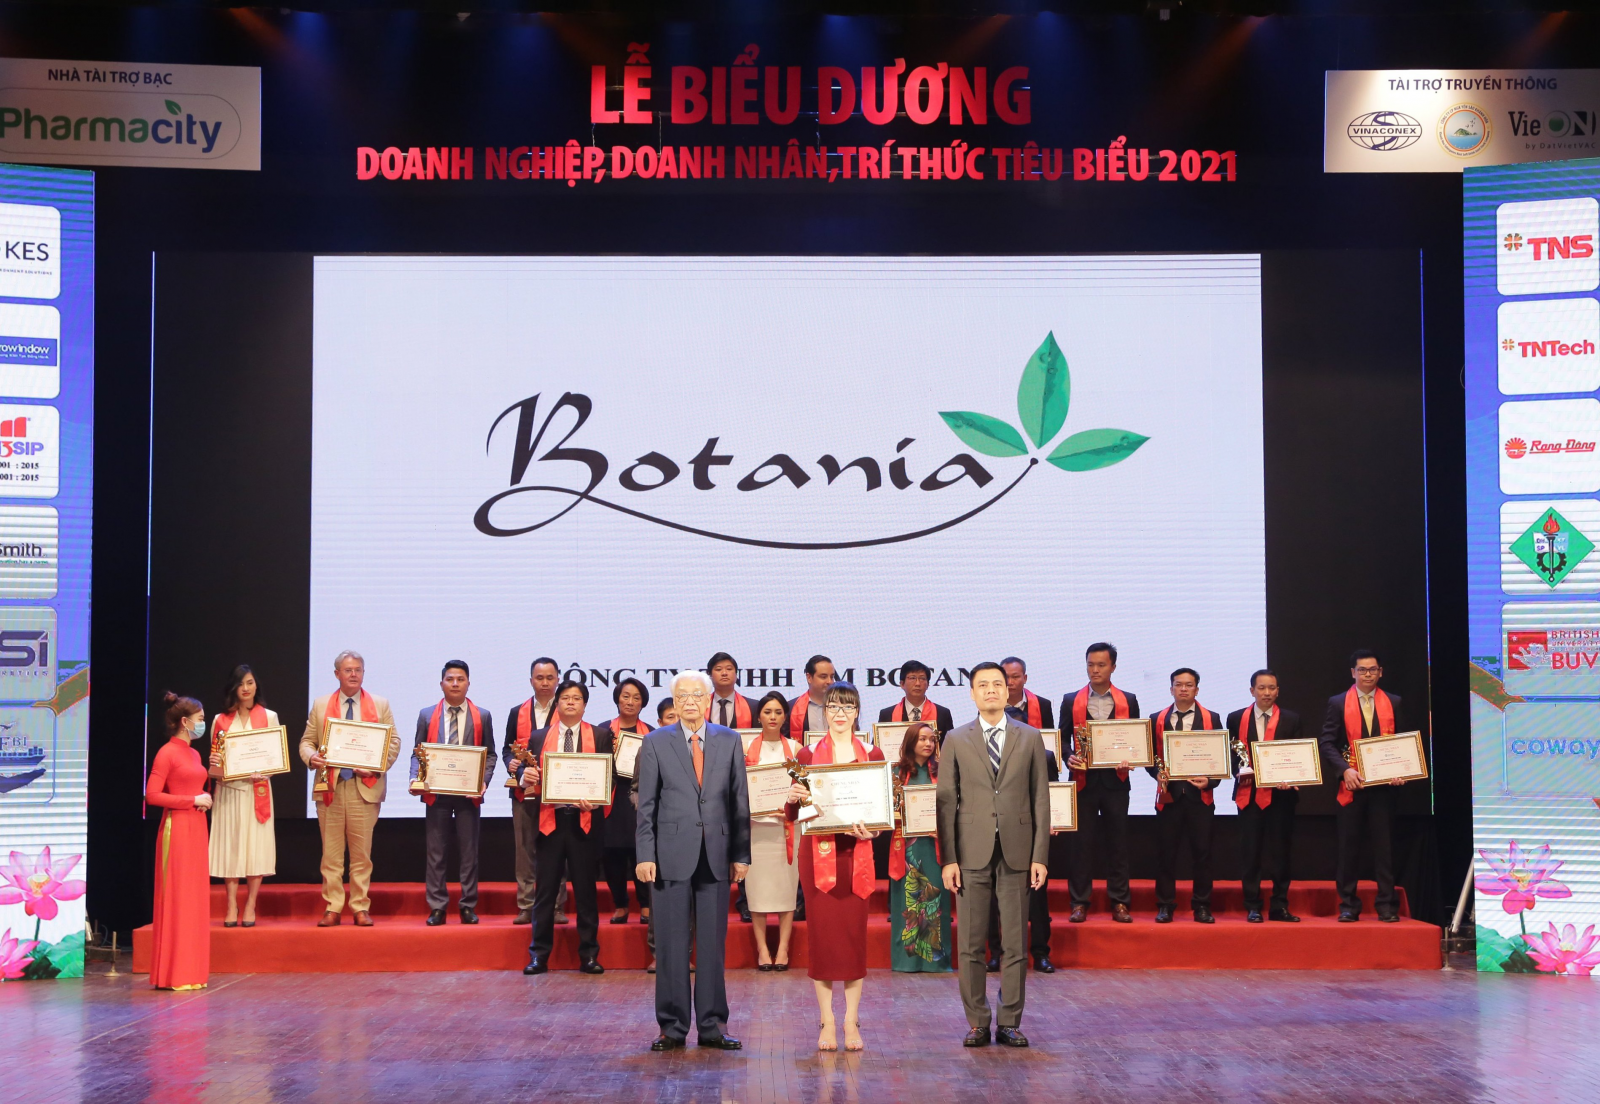 Đại diện công ty Botania lên nhận giải thưởng do ông Đặng Hoàng Giang - Thứ trưởng Bộ Ngoại giao và ông Cao Sỹ Kiêm – Nguyên thống đốc ngân hàng nhà nước Việt Nam trao tặng